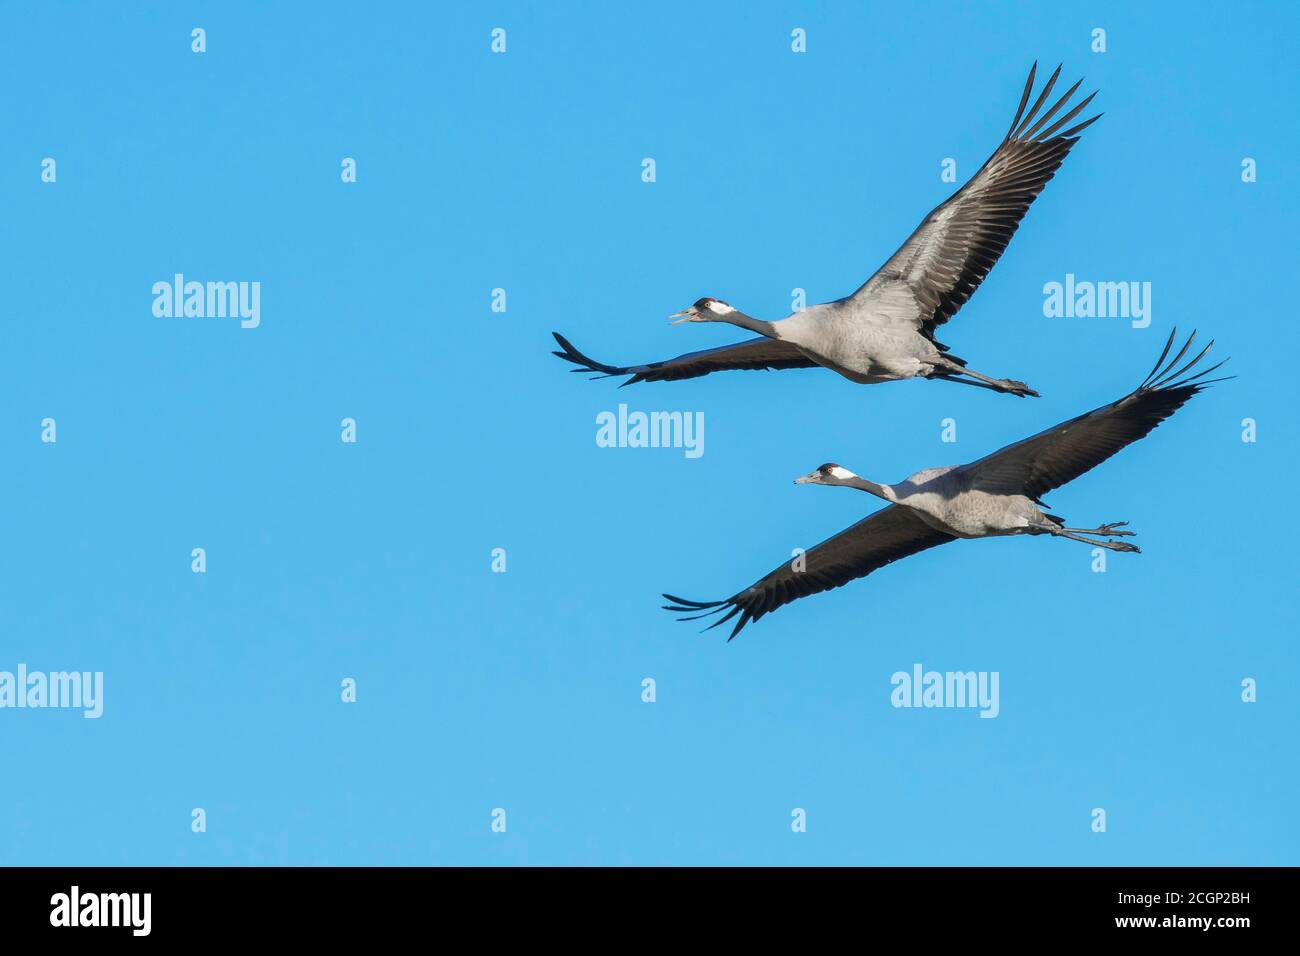 Grey Common cranes (grus grus) flying in front of blue sky, migratory bird, Vaestergoetland, Sweden Stock Photo